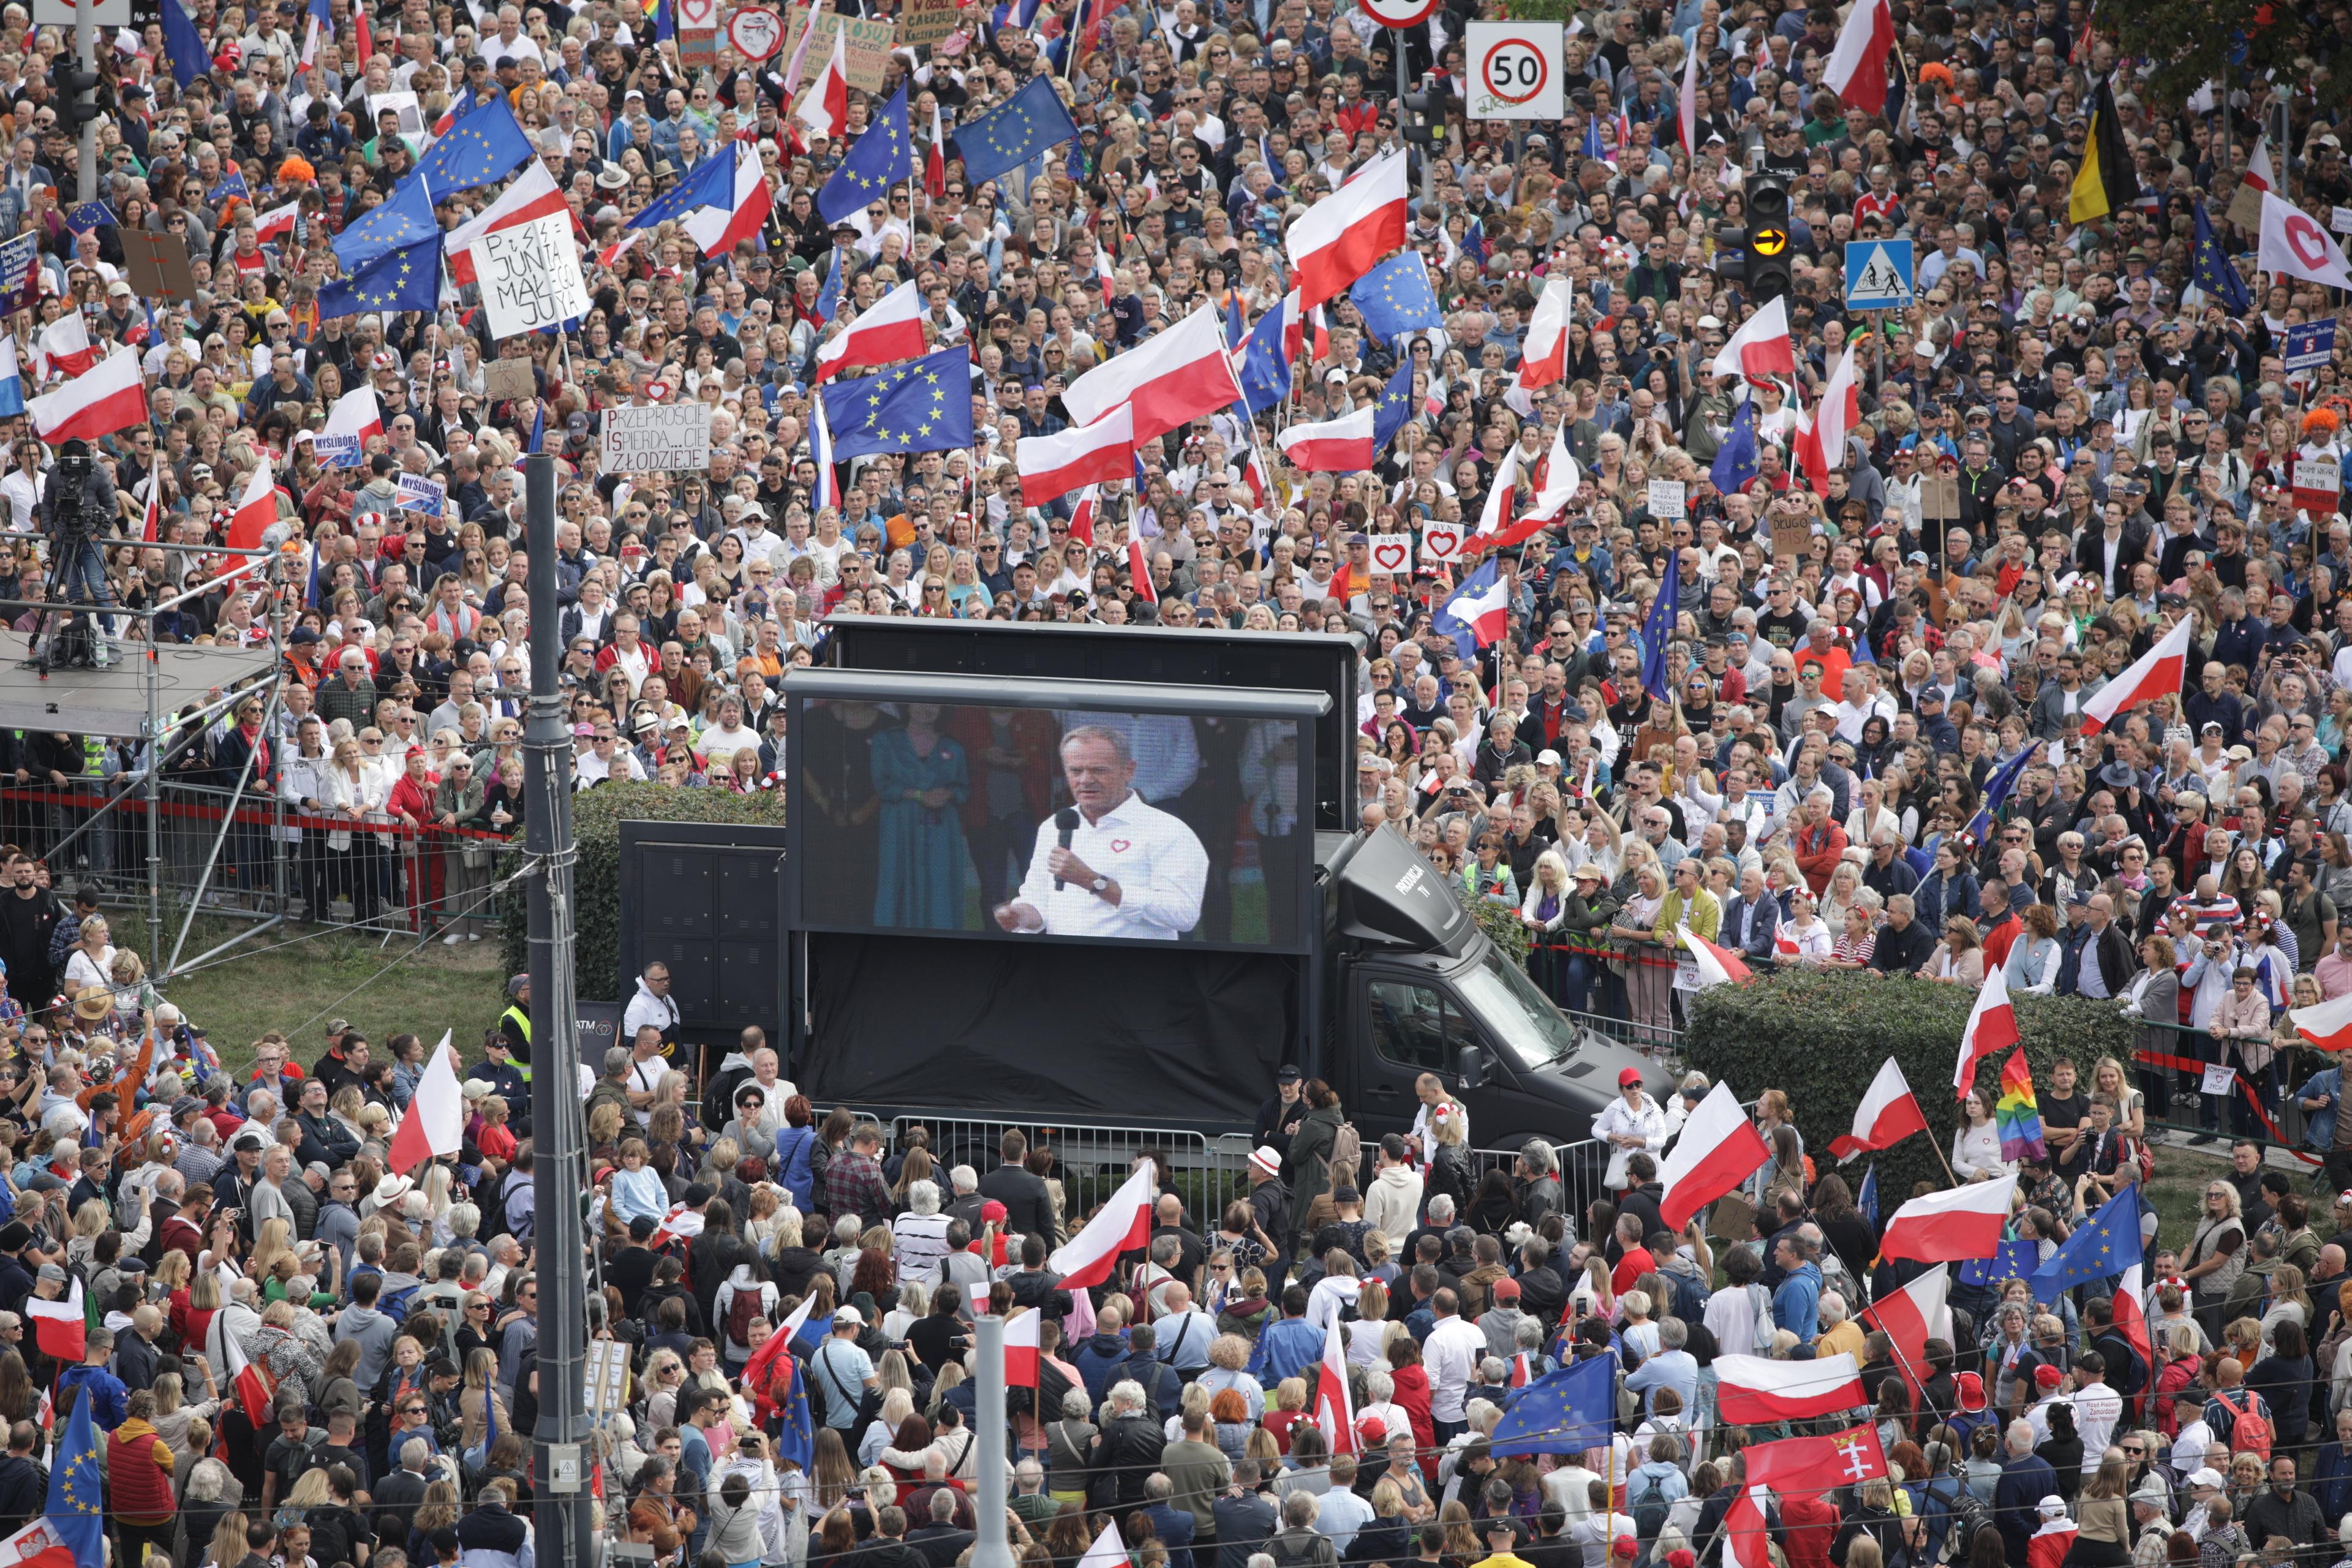 tłum ludzi z biało-czerwonymi flagami, na środku telebim, a na nim Donald Tusk